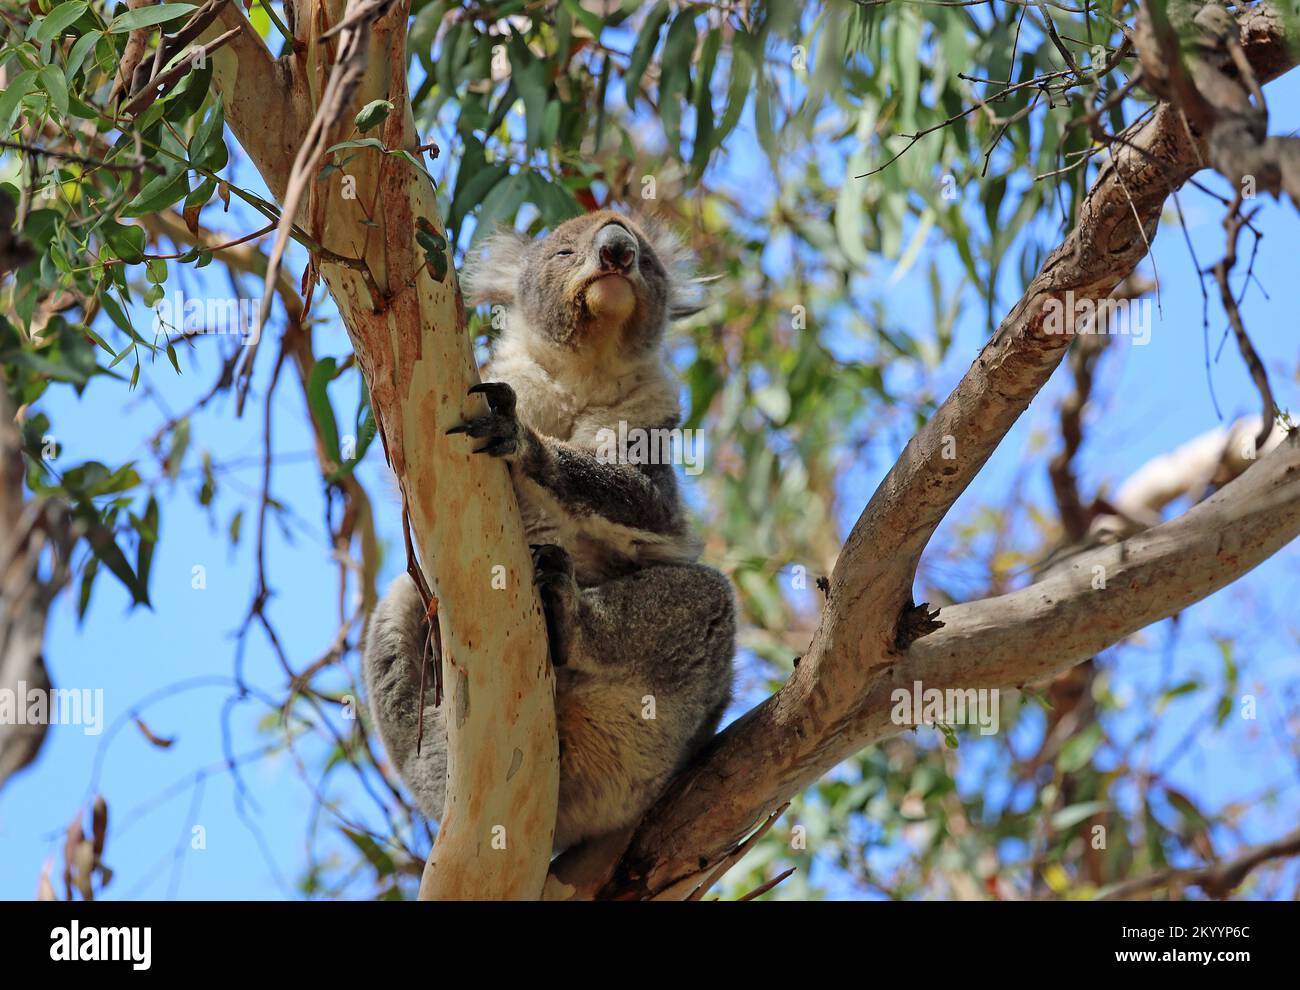 Koala sniffing - Australia Stock Photo